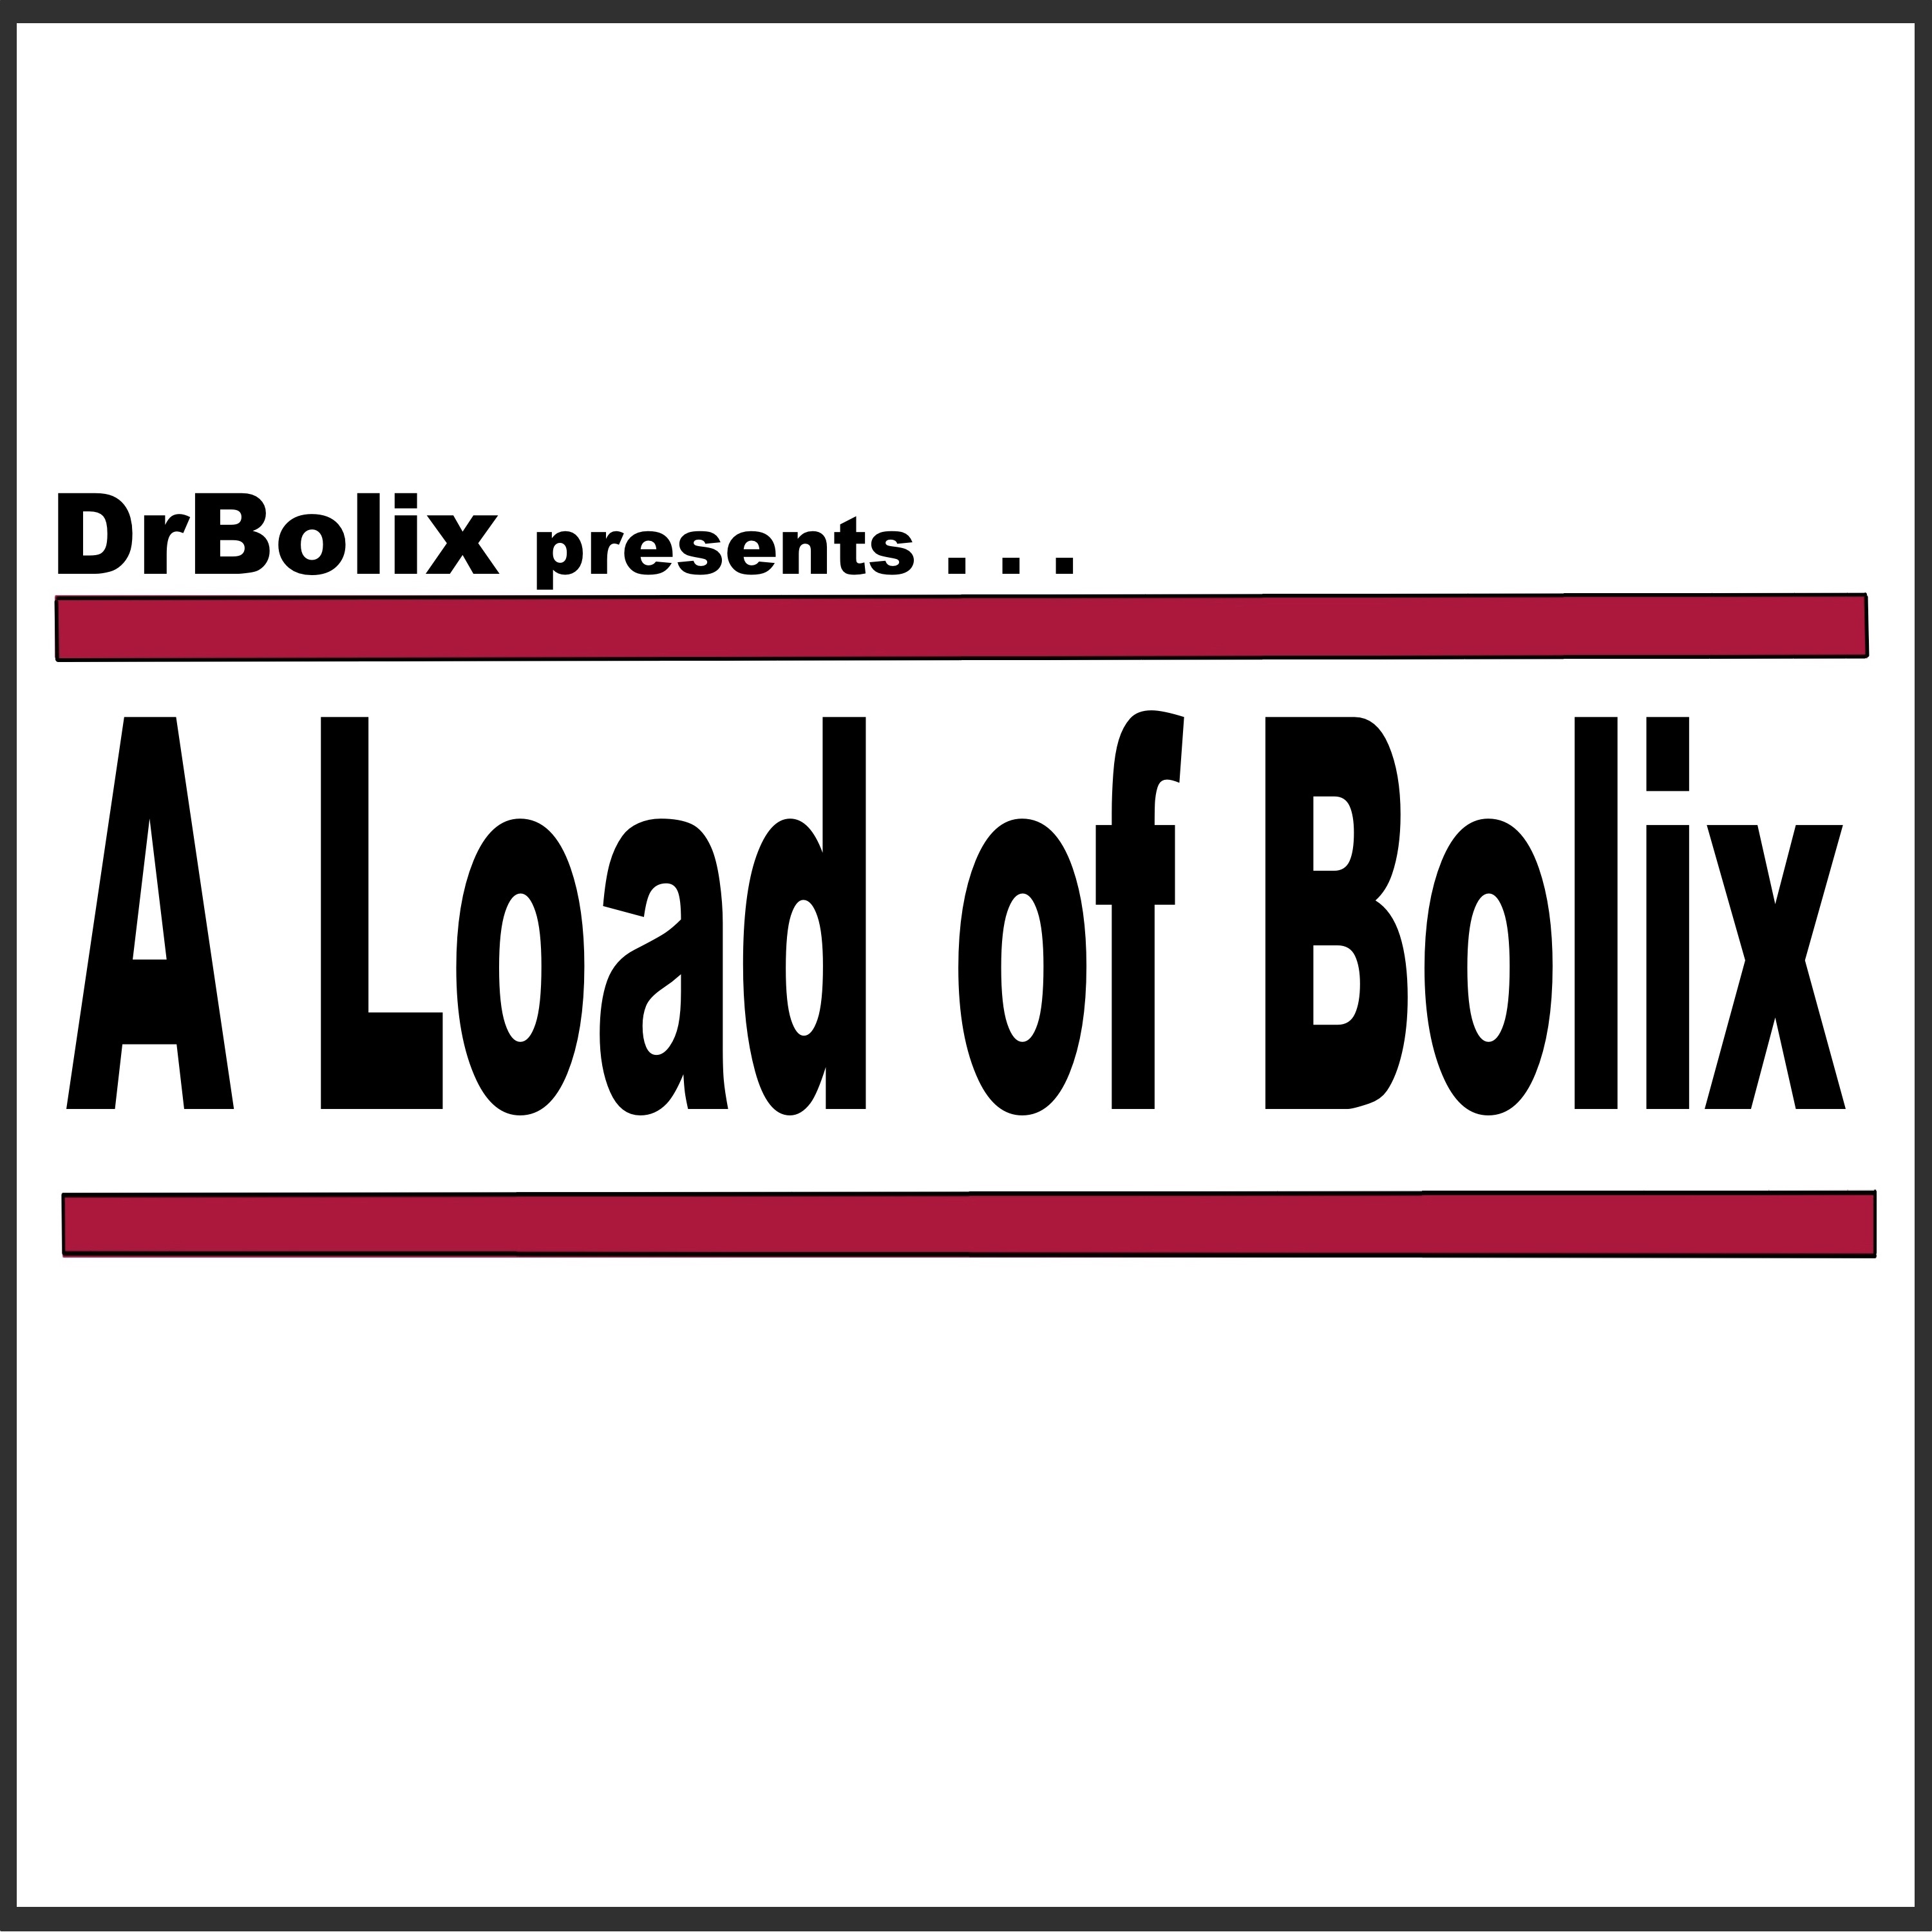 A Load of Bolix